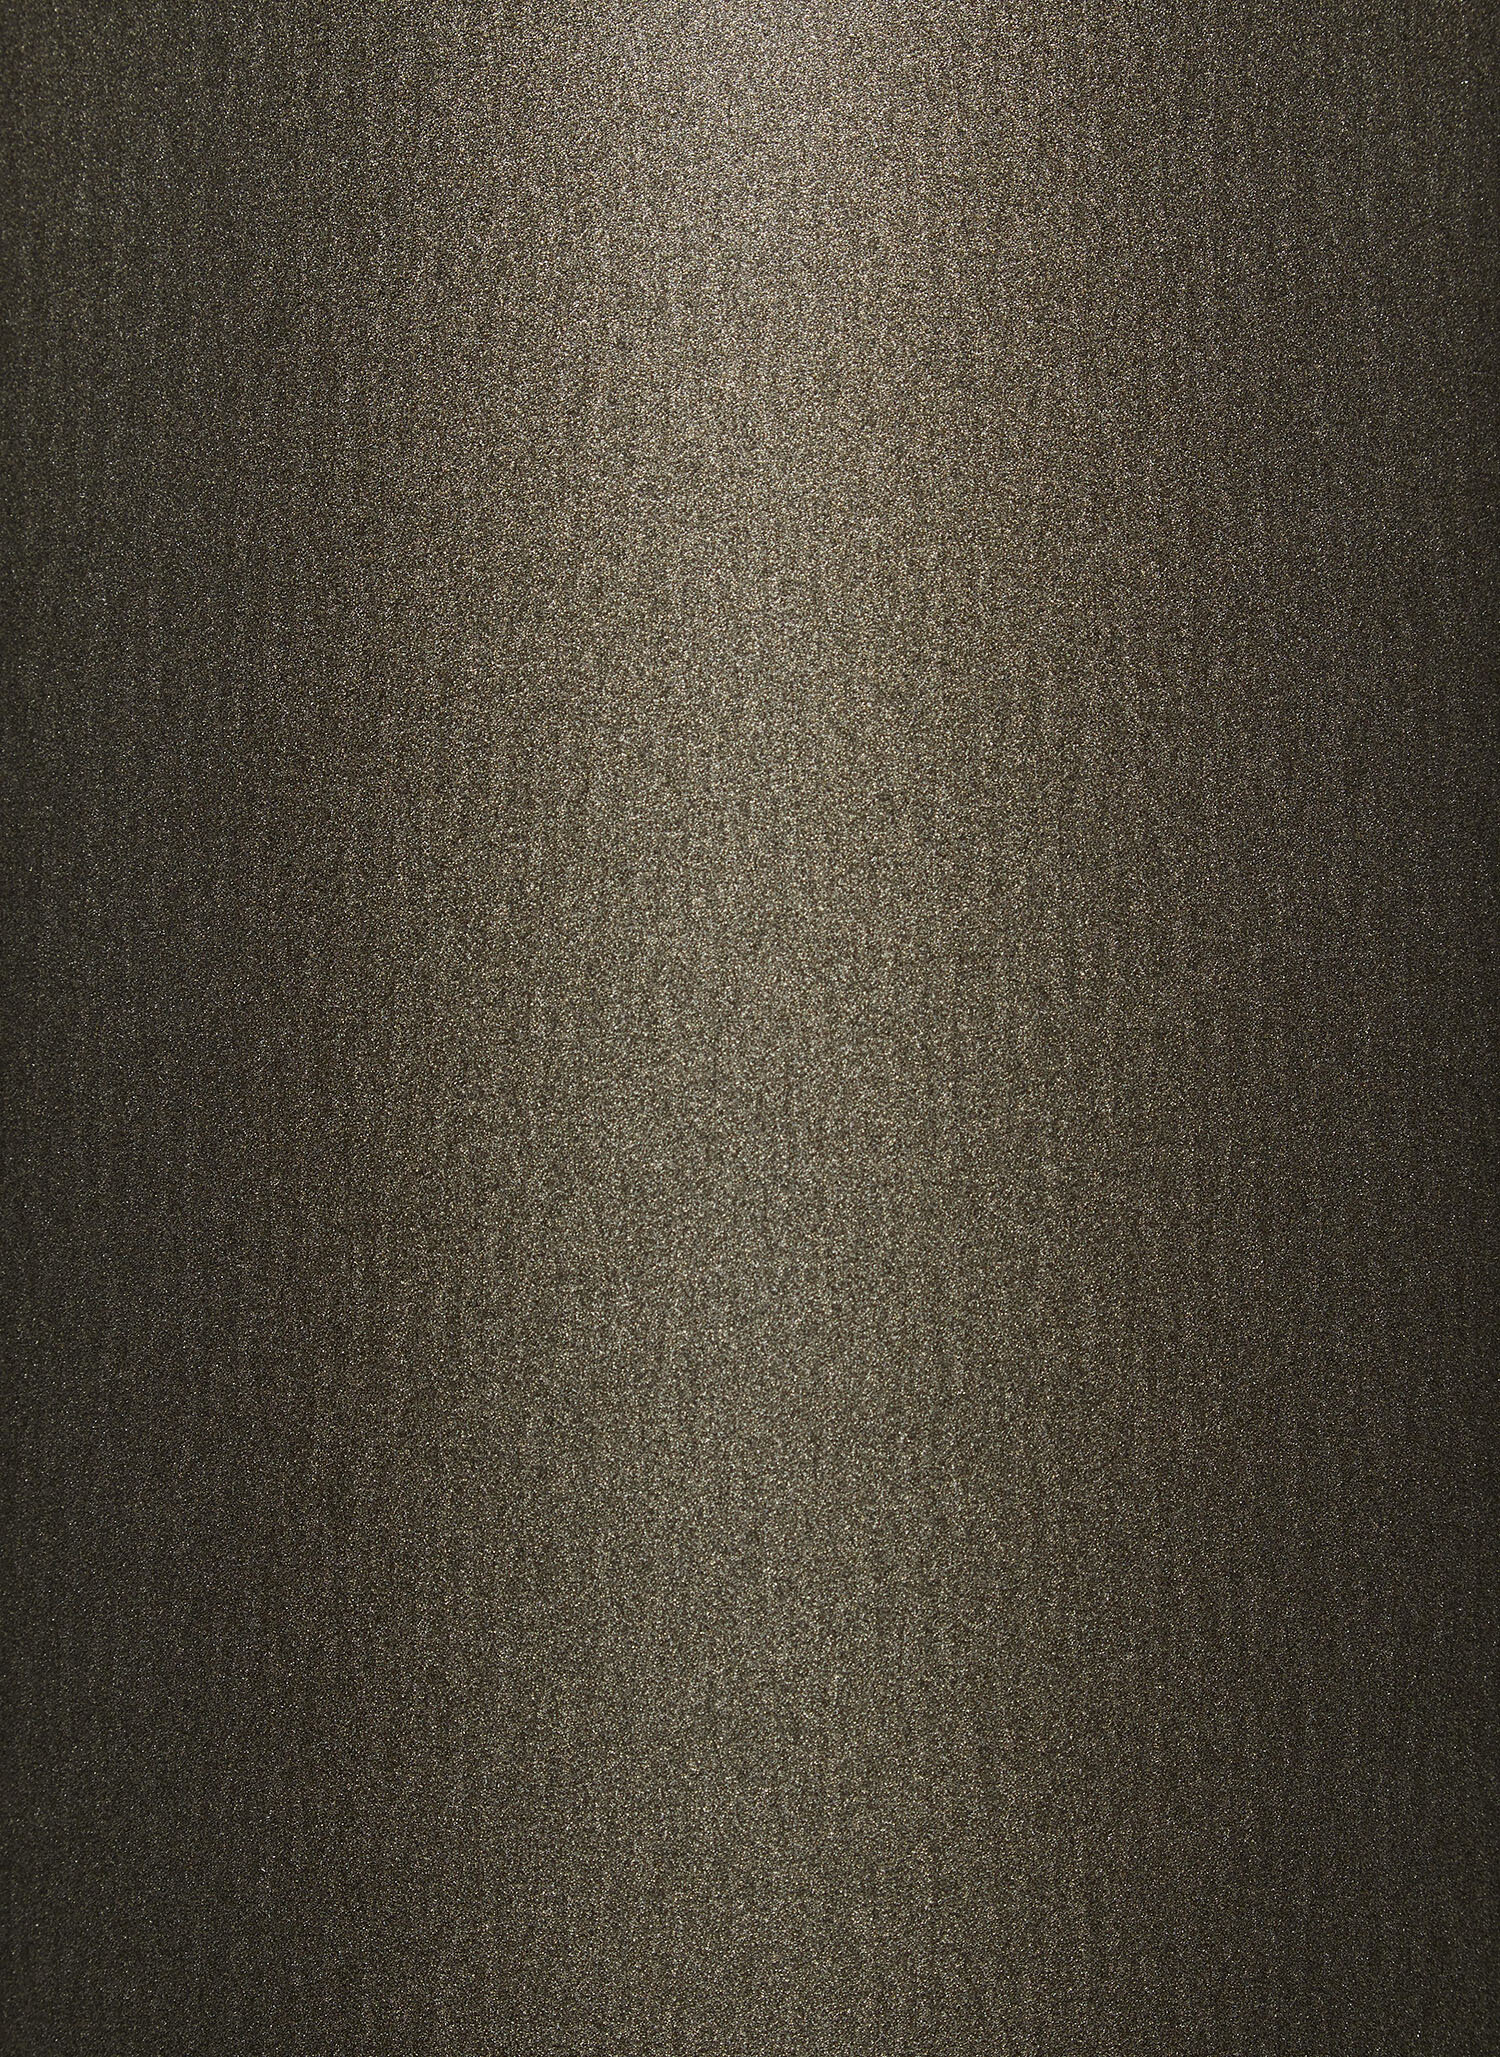 Dark Bronze Metallic 4651B (60% gloss)